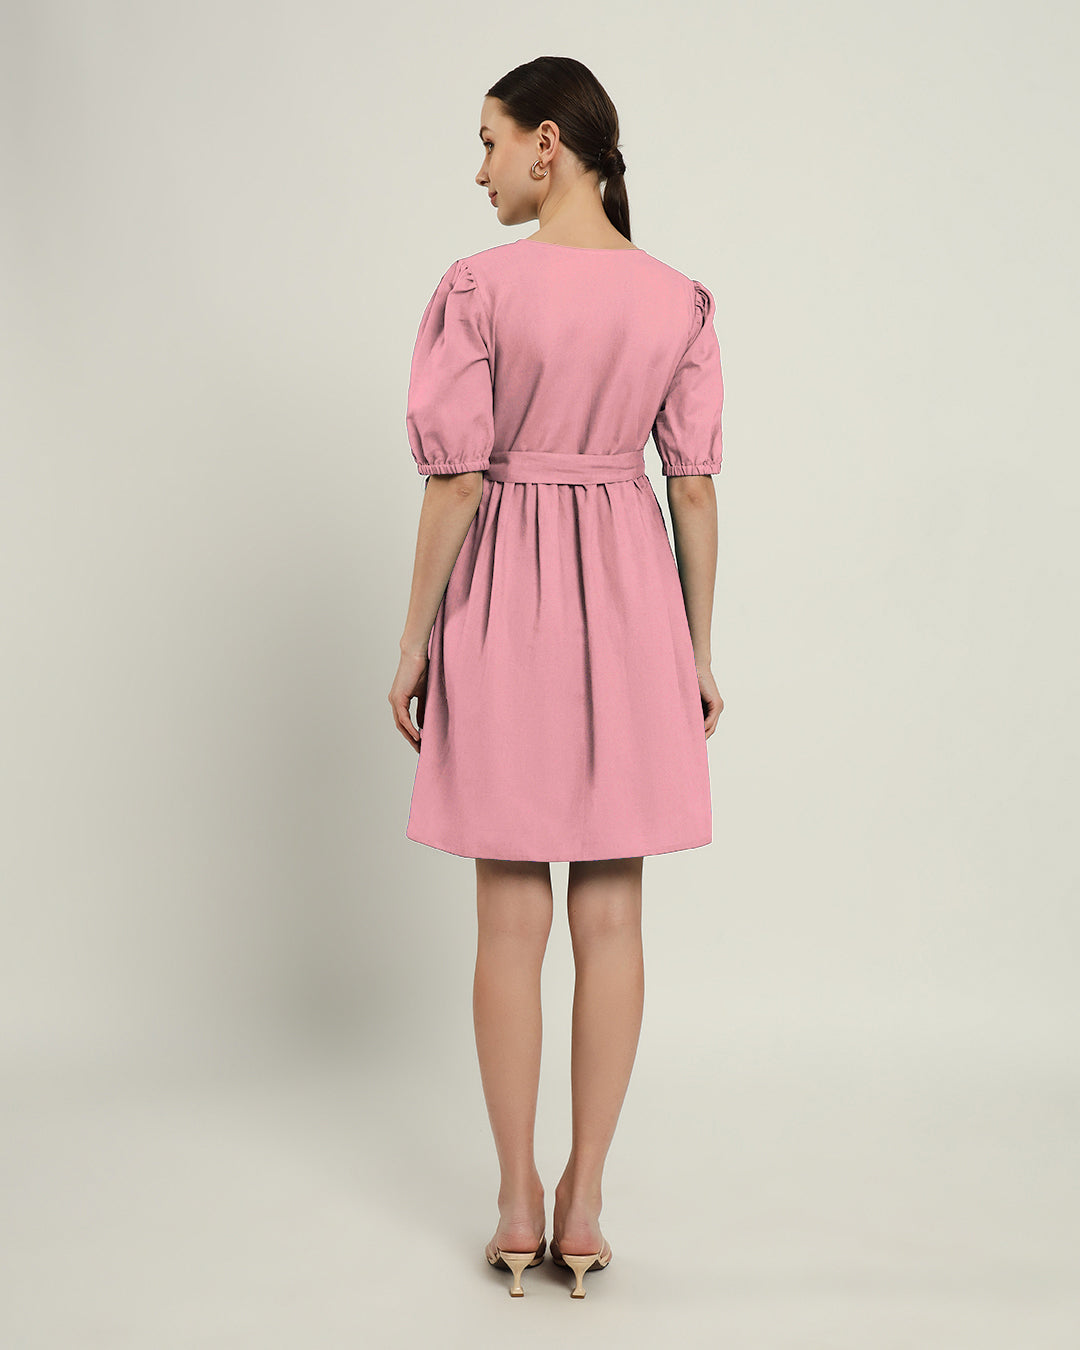 The Inzai Fondant Pink Cotton Dress